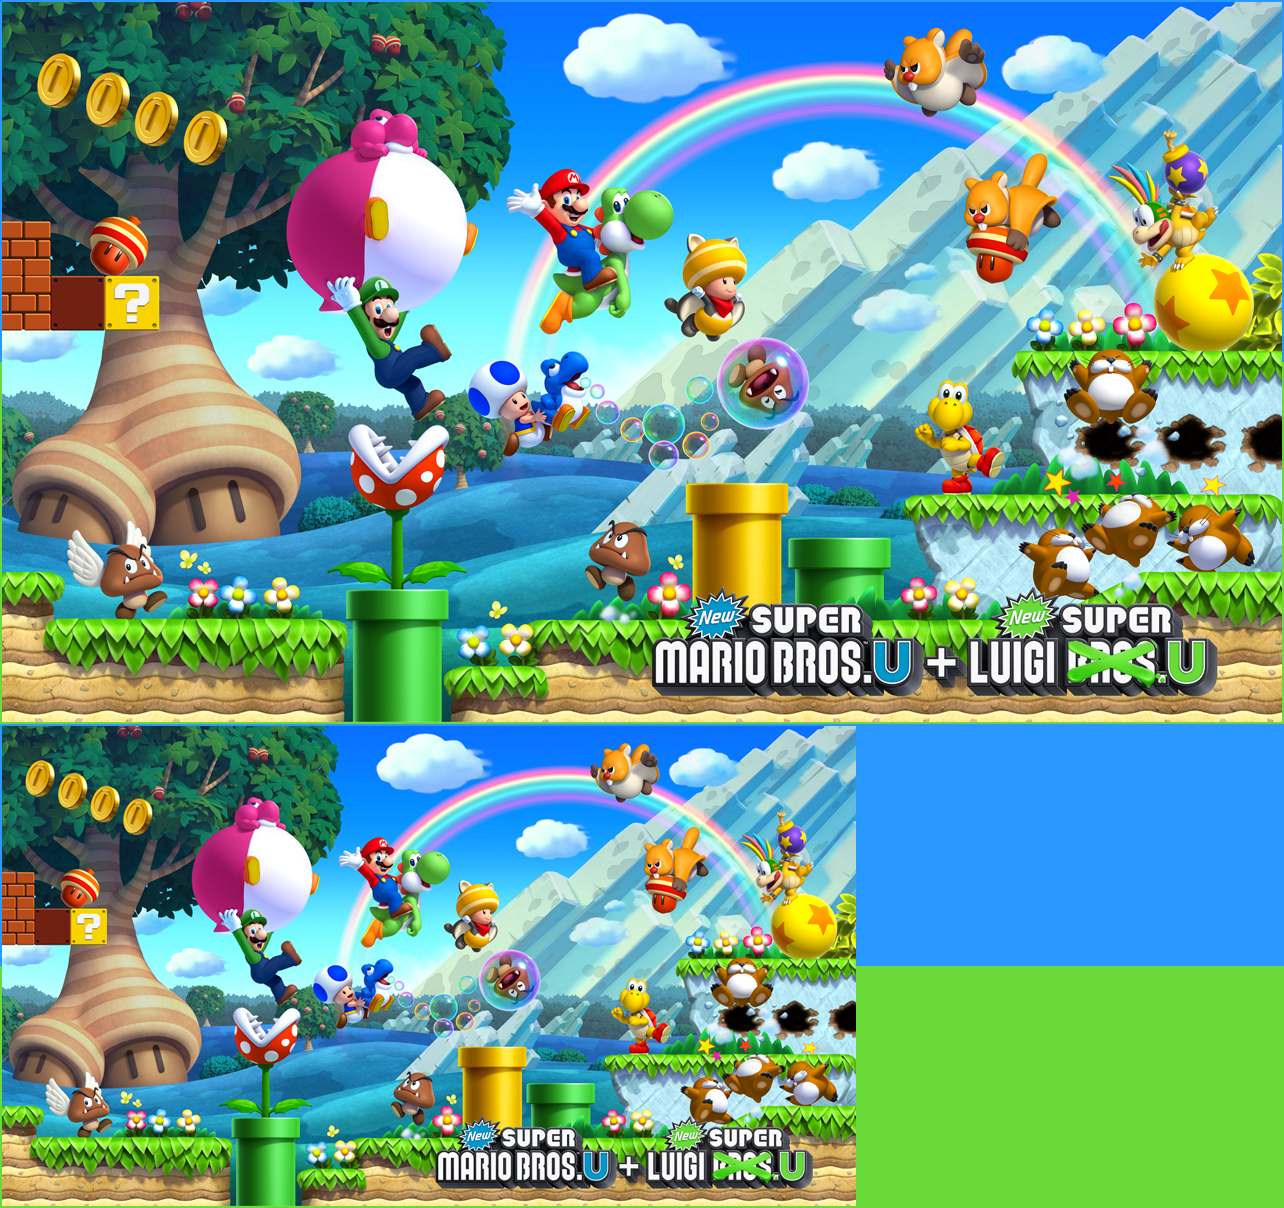 New Super Mario Bros. U / New Super Luigi U - Banners